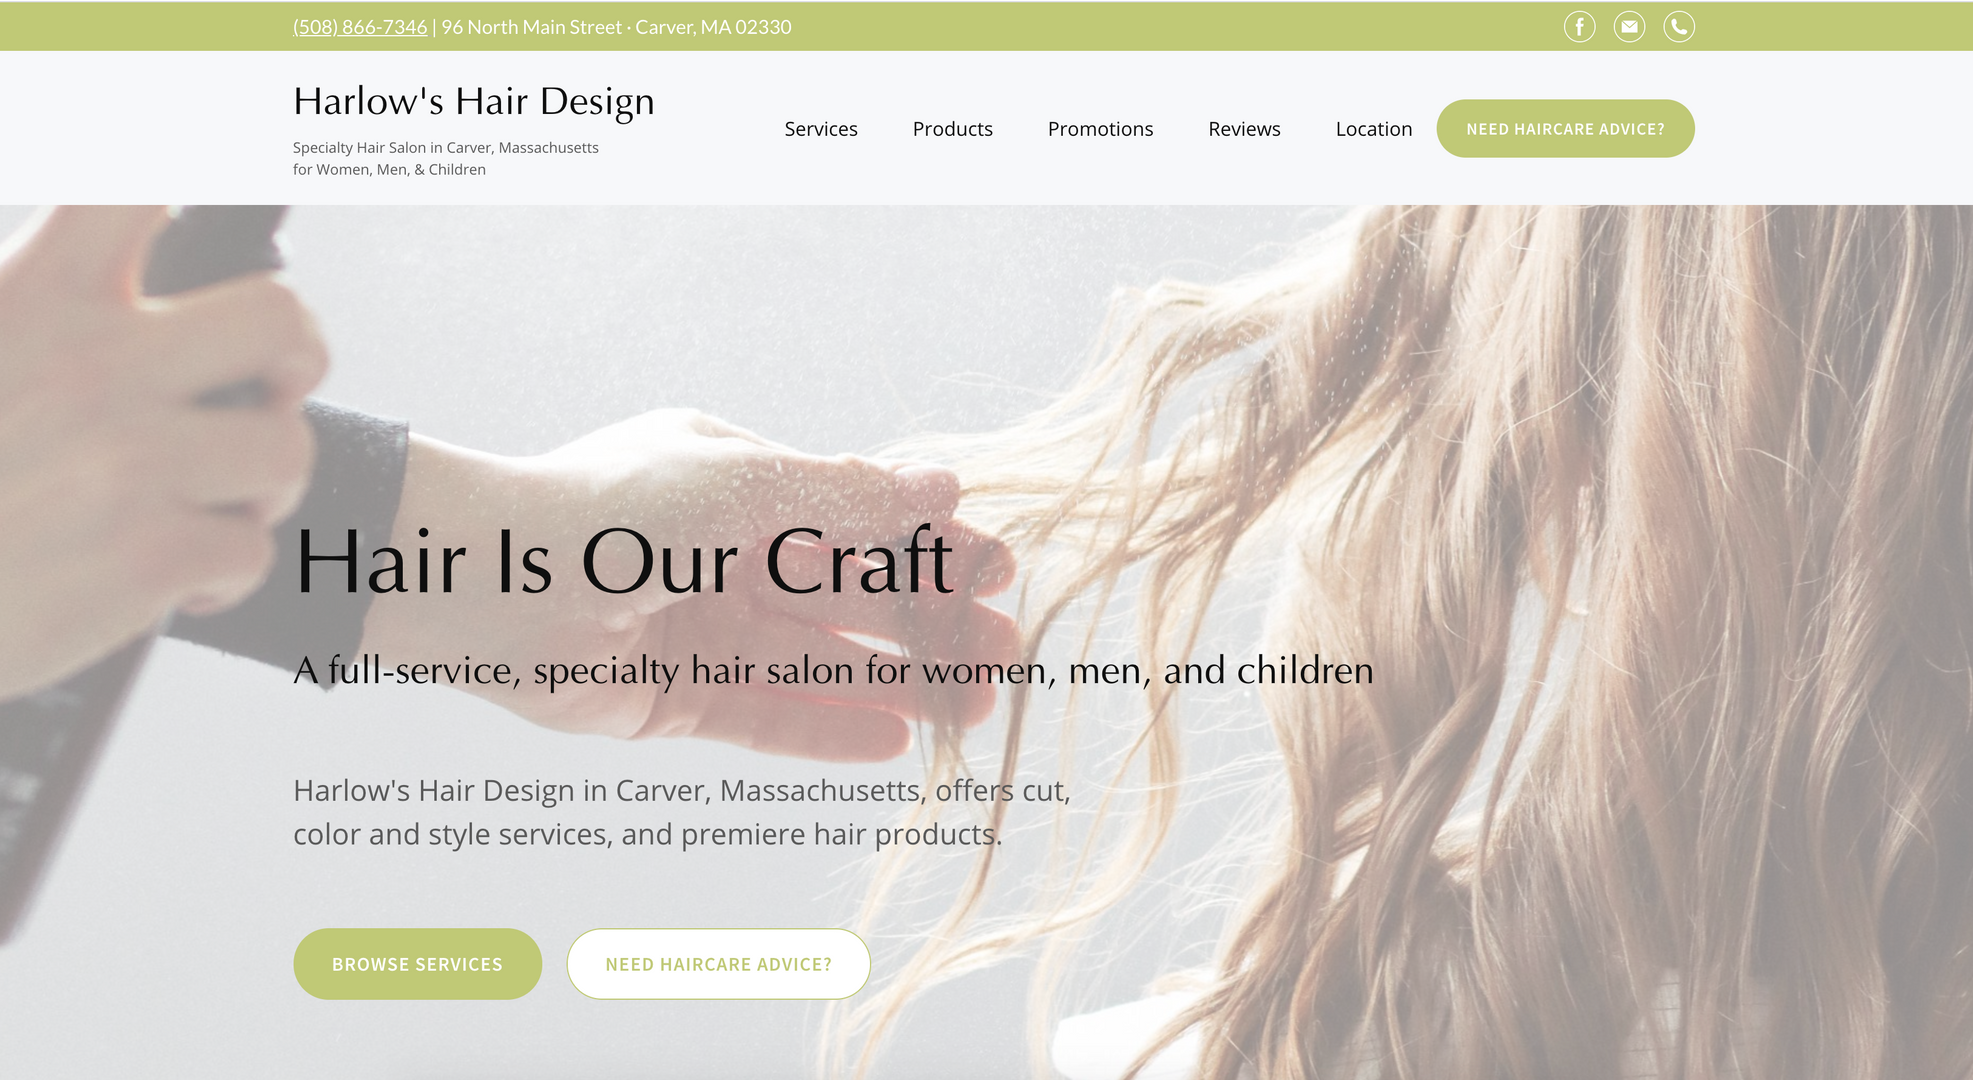 Harlow's Hair Design | Quality Hair Salon in Carver, Massachusetts